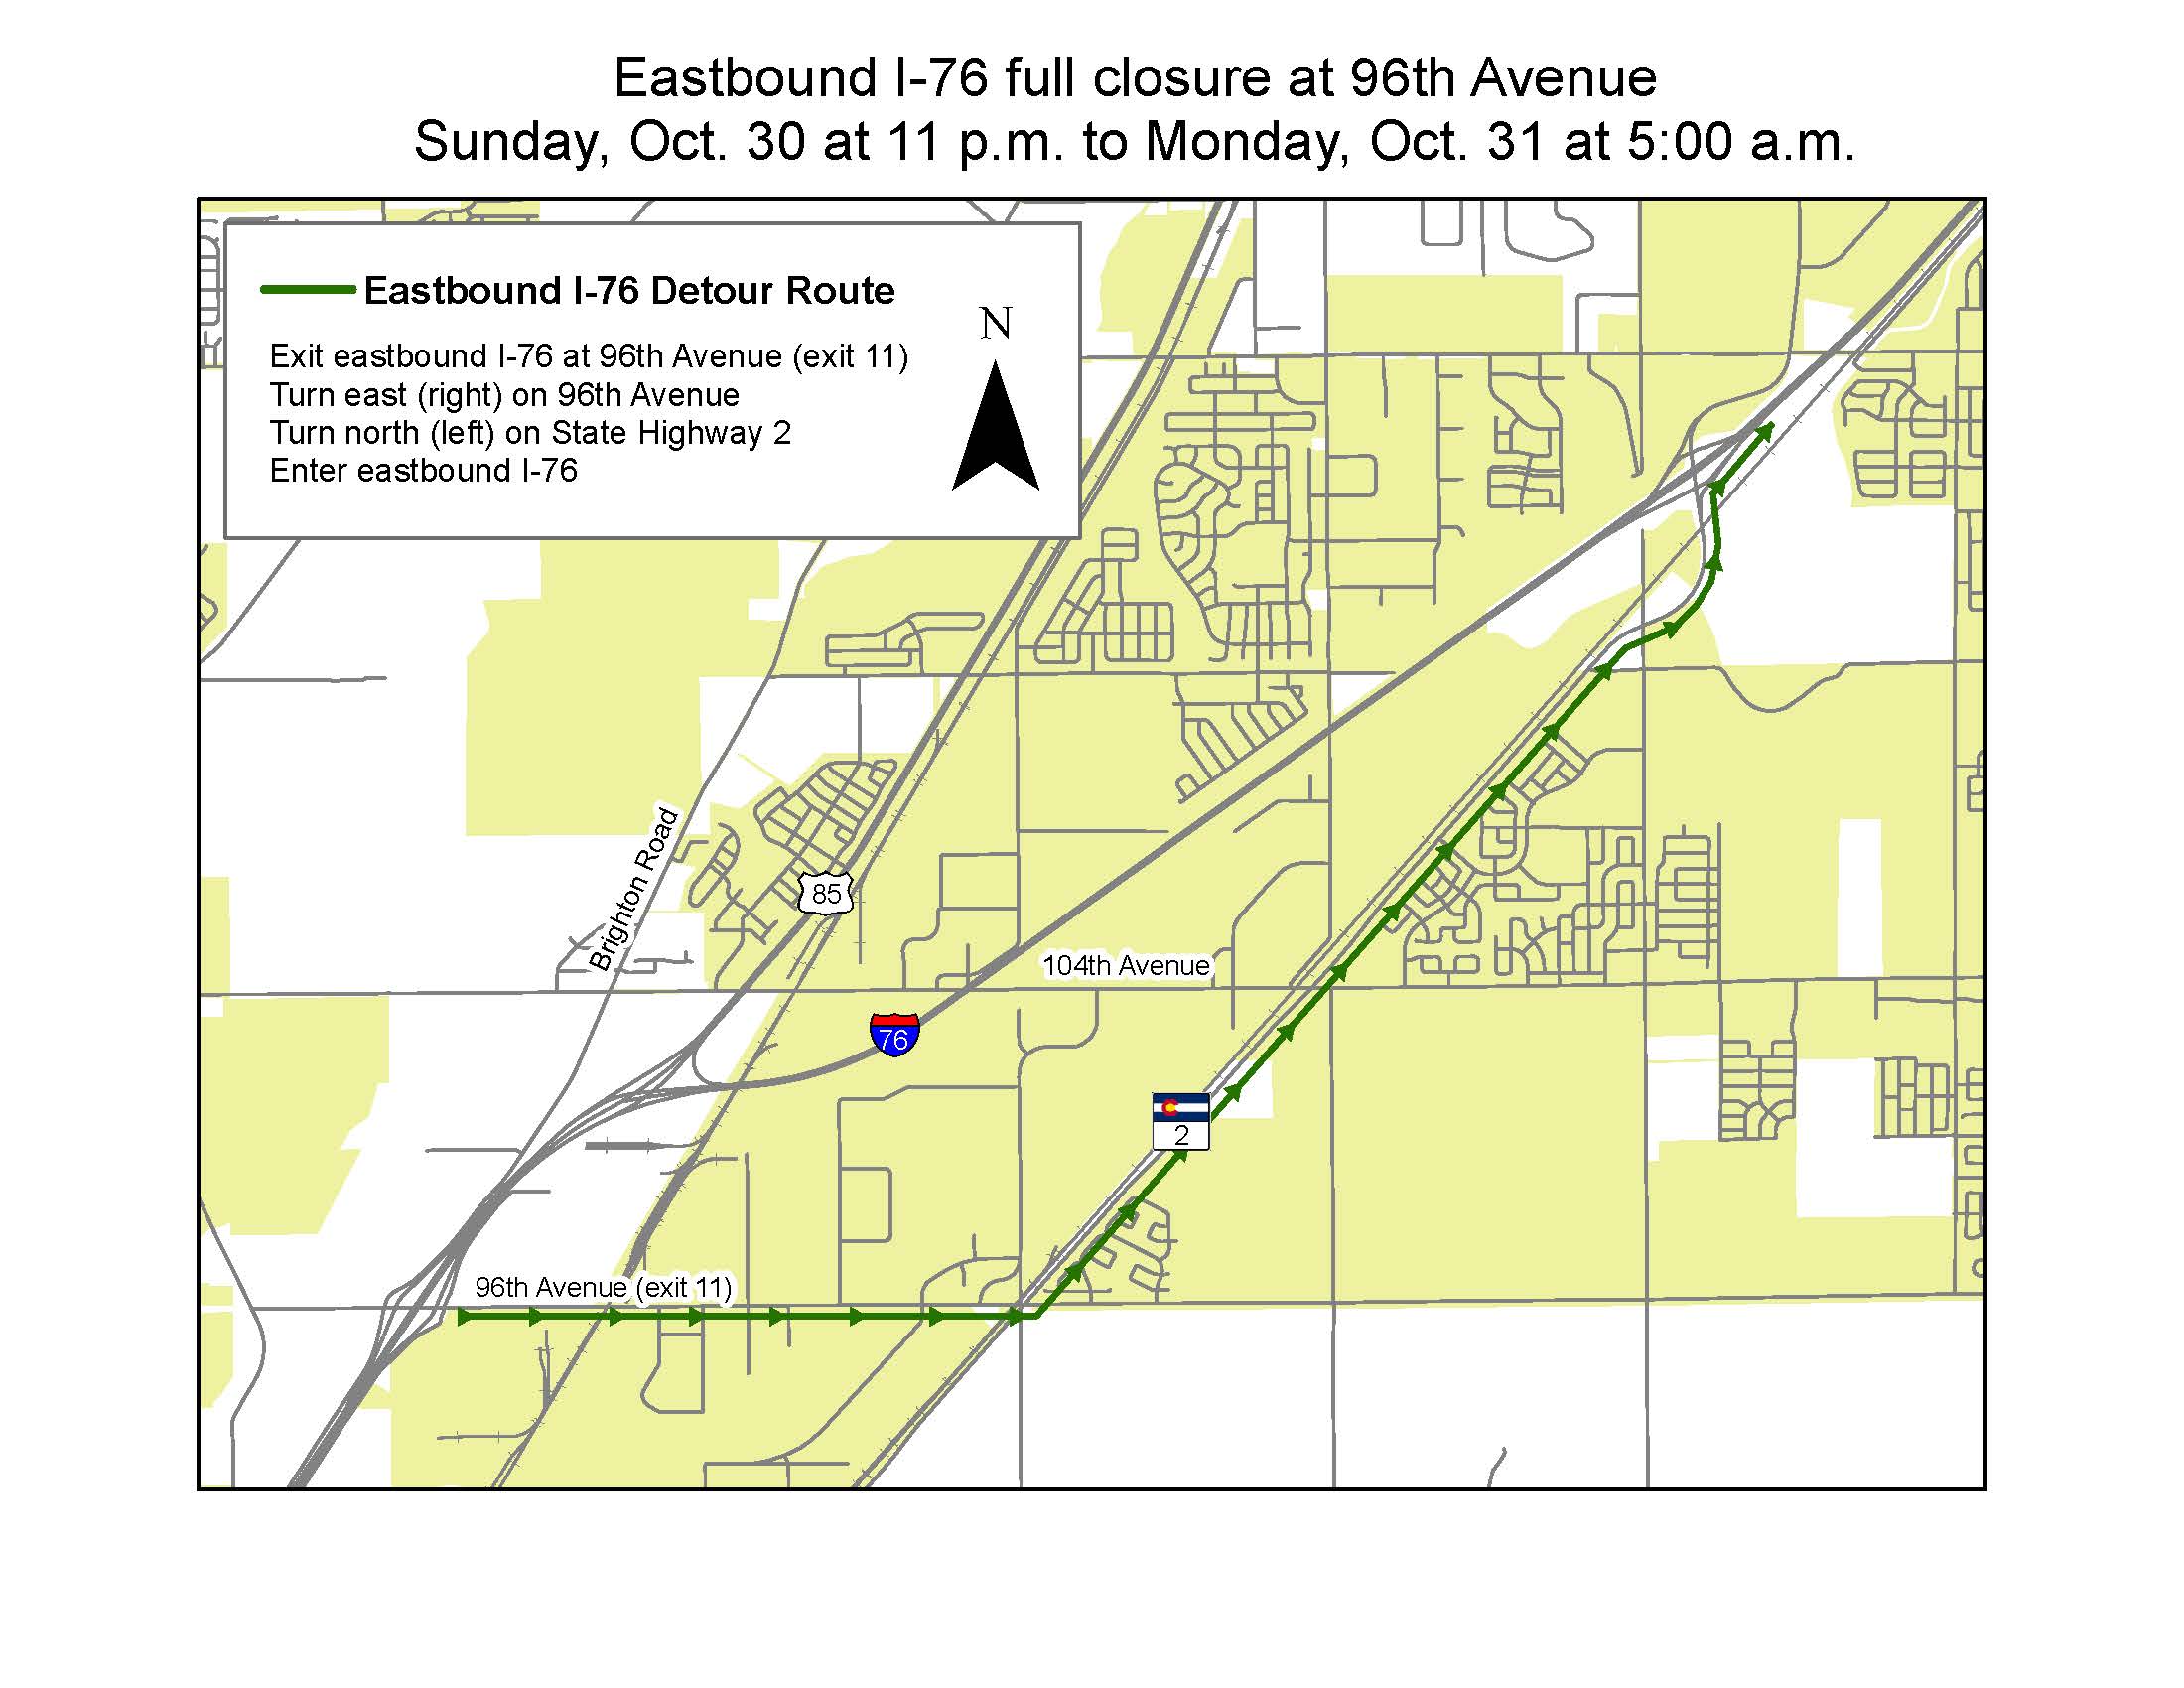 EB I-76 Detour Map.jpg detail image